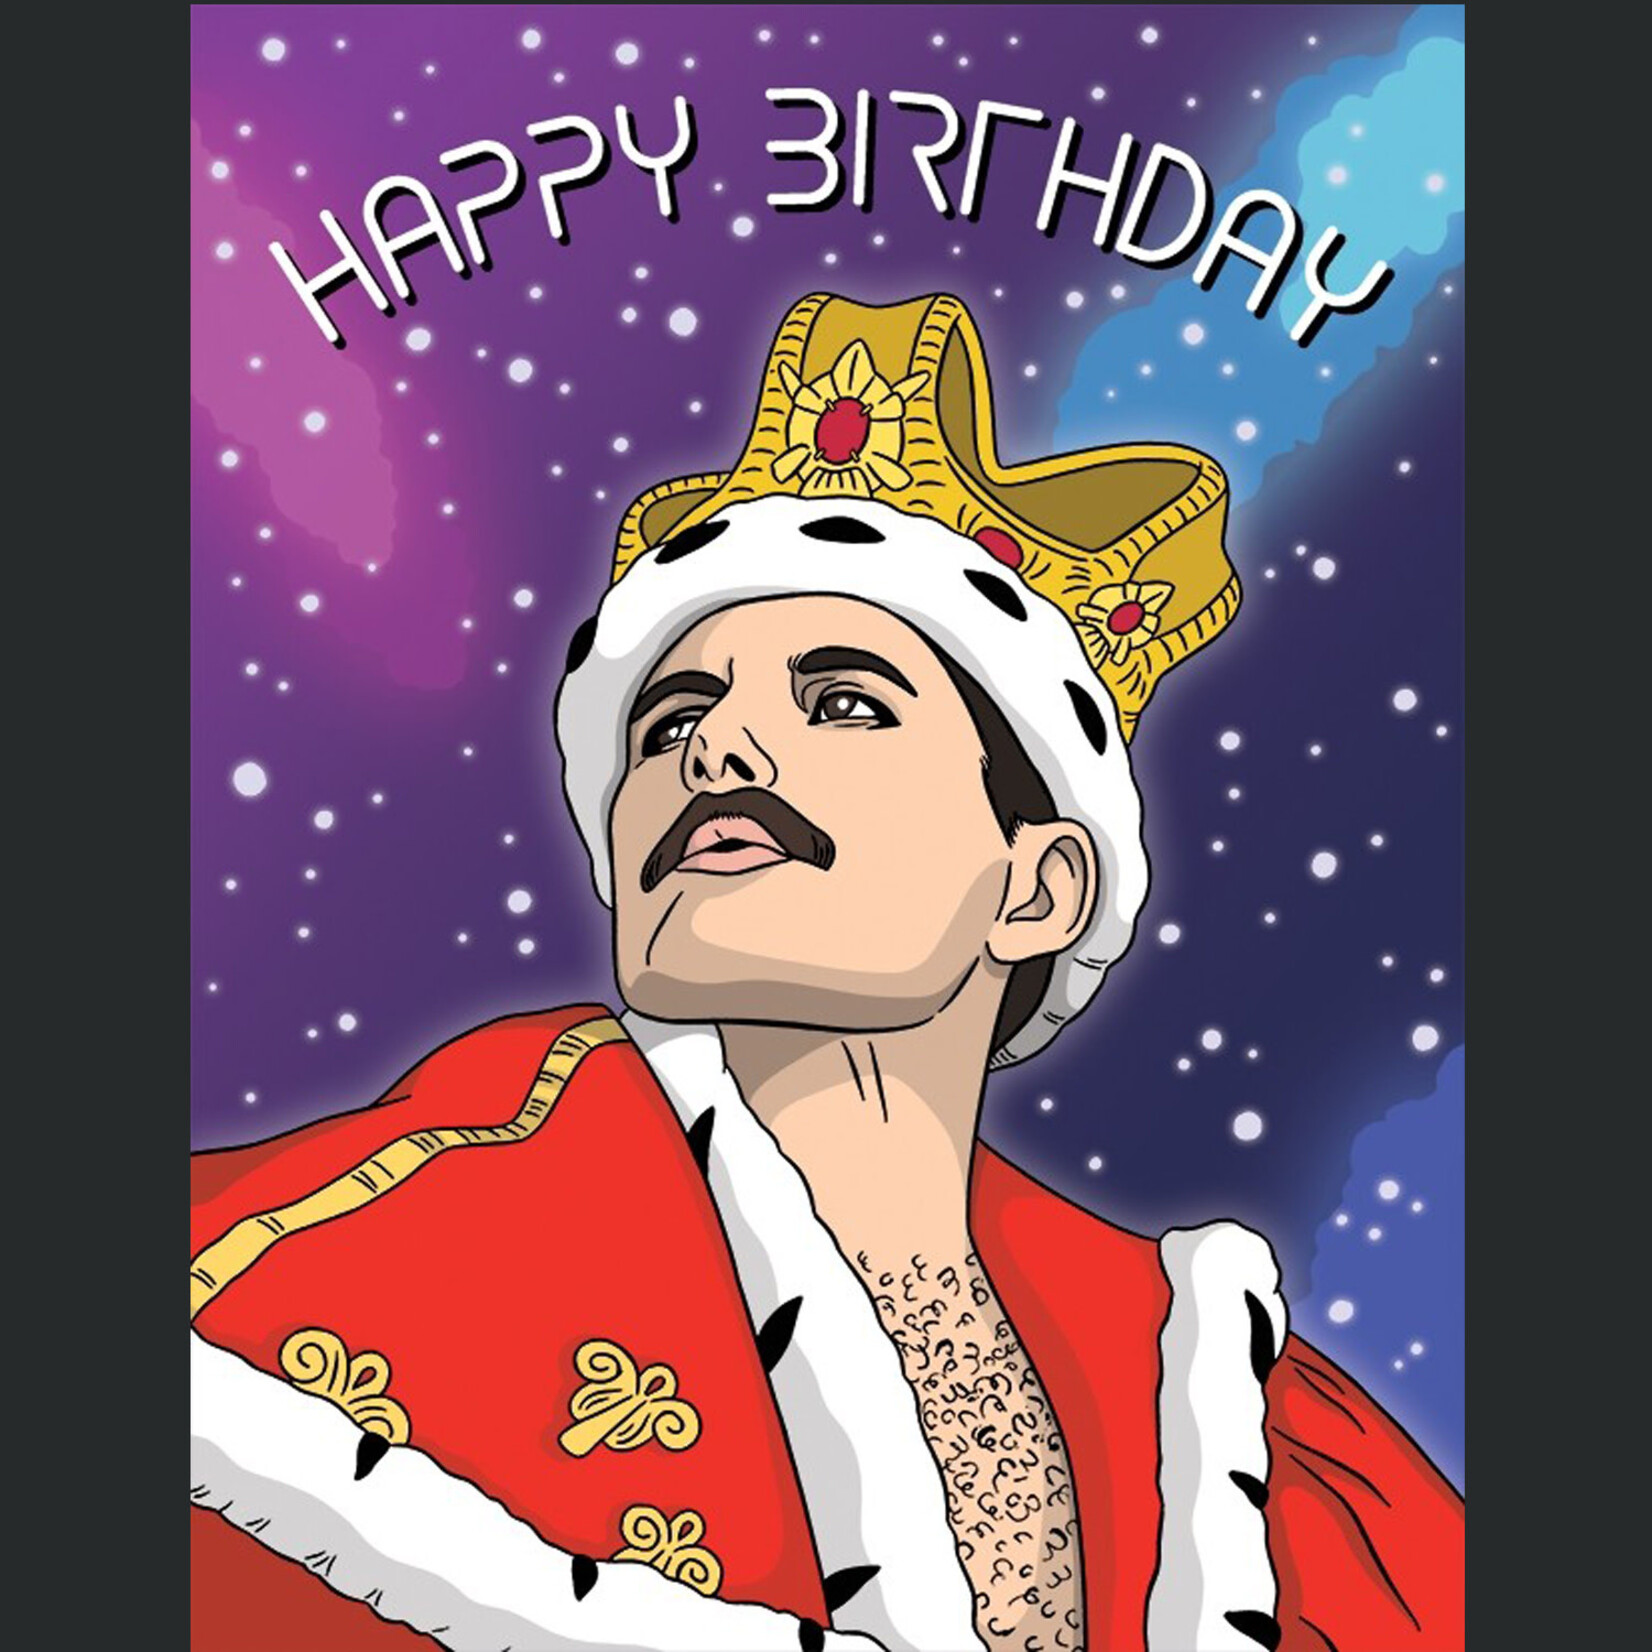 Freddie Mercury Happy Birthday Card